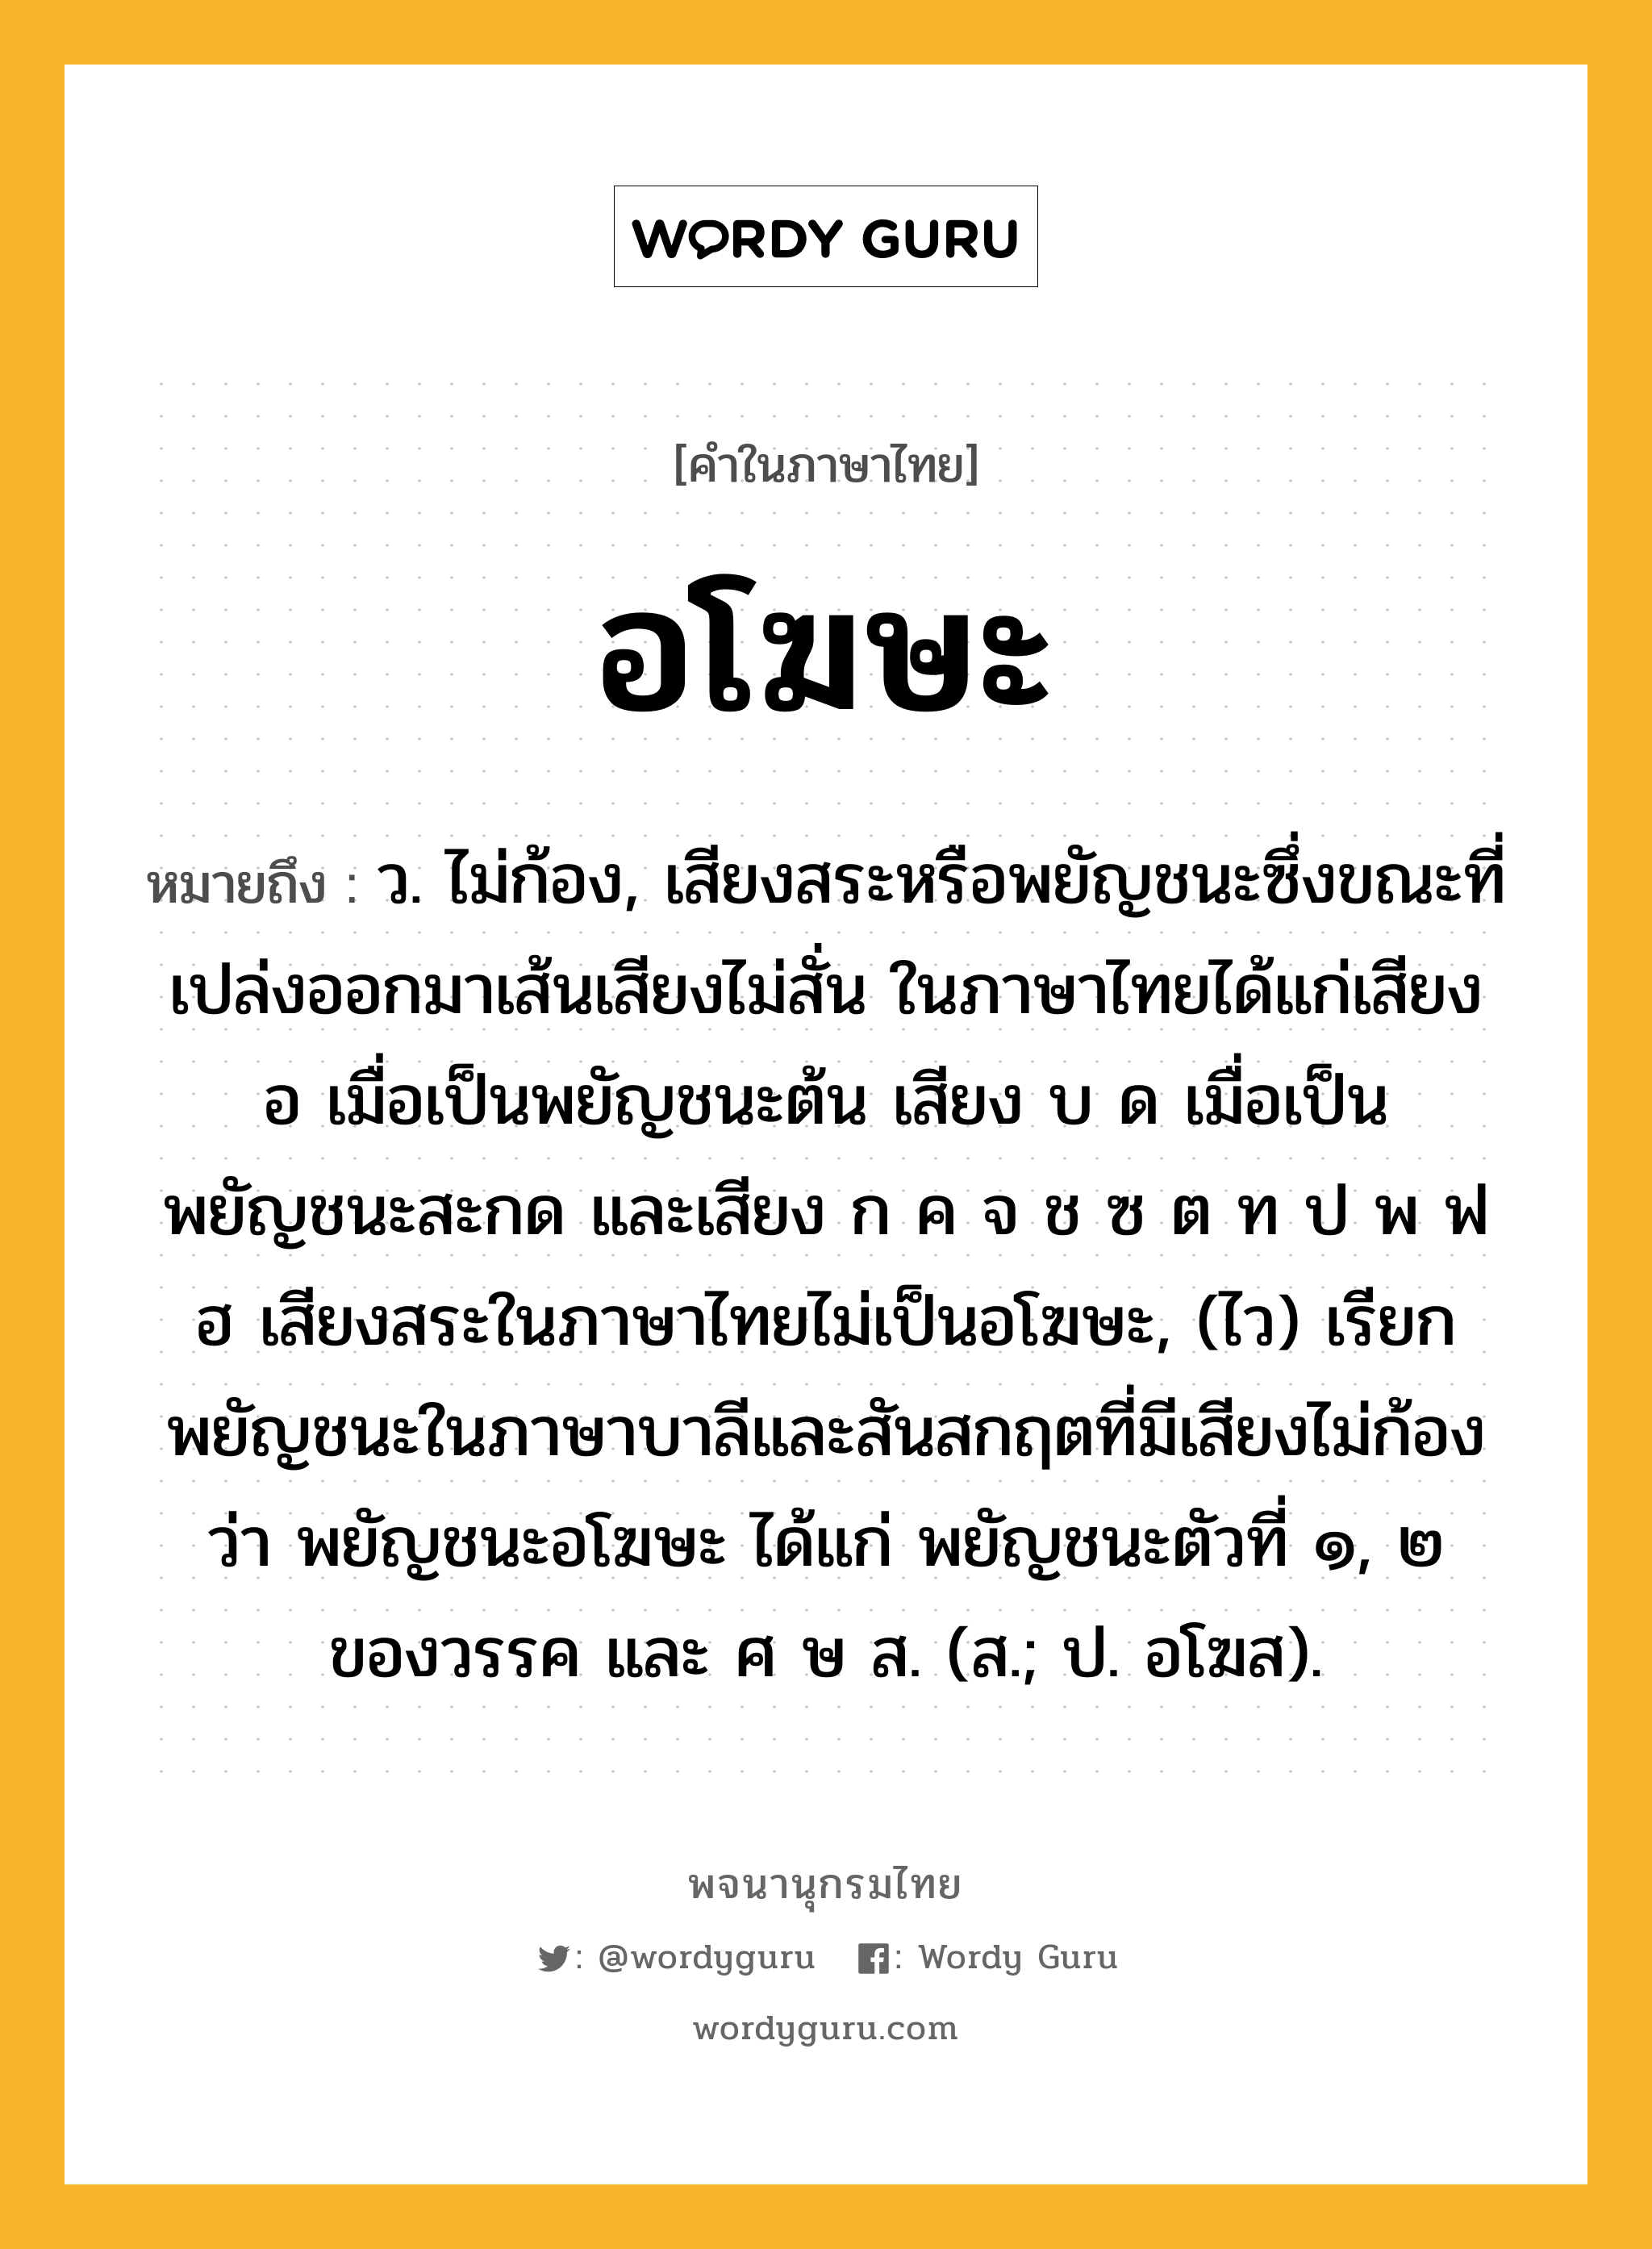 อโฆษะ หมายถึงอะไร?, คำในภาษาไทย อโฆษะ หมายถึง ว. ไม่ก้อง, เสียงสระหรือพยัญชนะซึ่งขณะที่เปล่งออกมาเส้นเสียงไม่สั่น ในภาษาไทยได้แก่เสียง อ เมื่อเป็นพยัญชนะต้น เสียง บ ด เมื่อเป็นพยัญชนะสะกด และเสียง ก ค จ ช ซ ต ท ป พ ฟ ฮ เสียงสระในภาษาไทยไม่เป็นอโฆษะ, (ไว) เรียกพยัญชนะในภาษาบาลีและสันสกฤตที่มีเสียงไม่ก้องว่า พยัญชนะอโฆษะ ได้แก่ พยัญชนะตัวที่ ๑, ๒ ของวรรค และ ศ ษ ส. (ส.; ป. อโฆส).